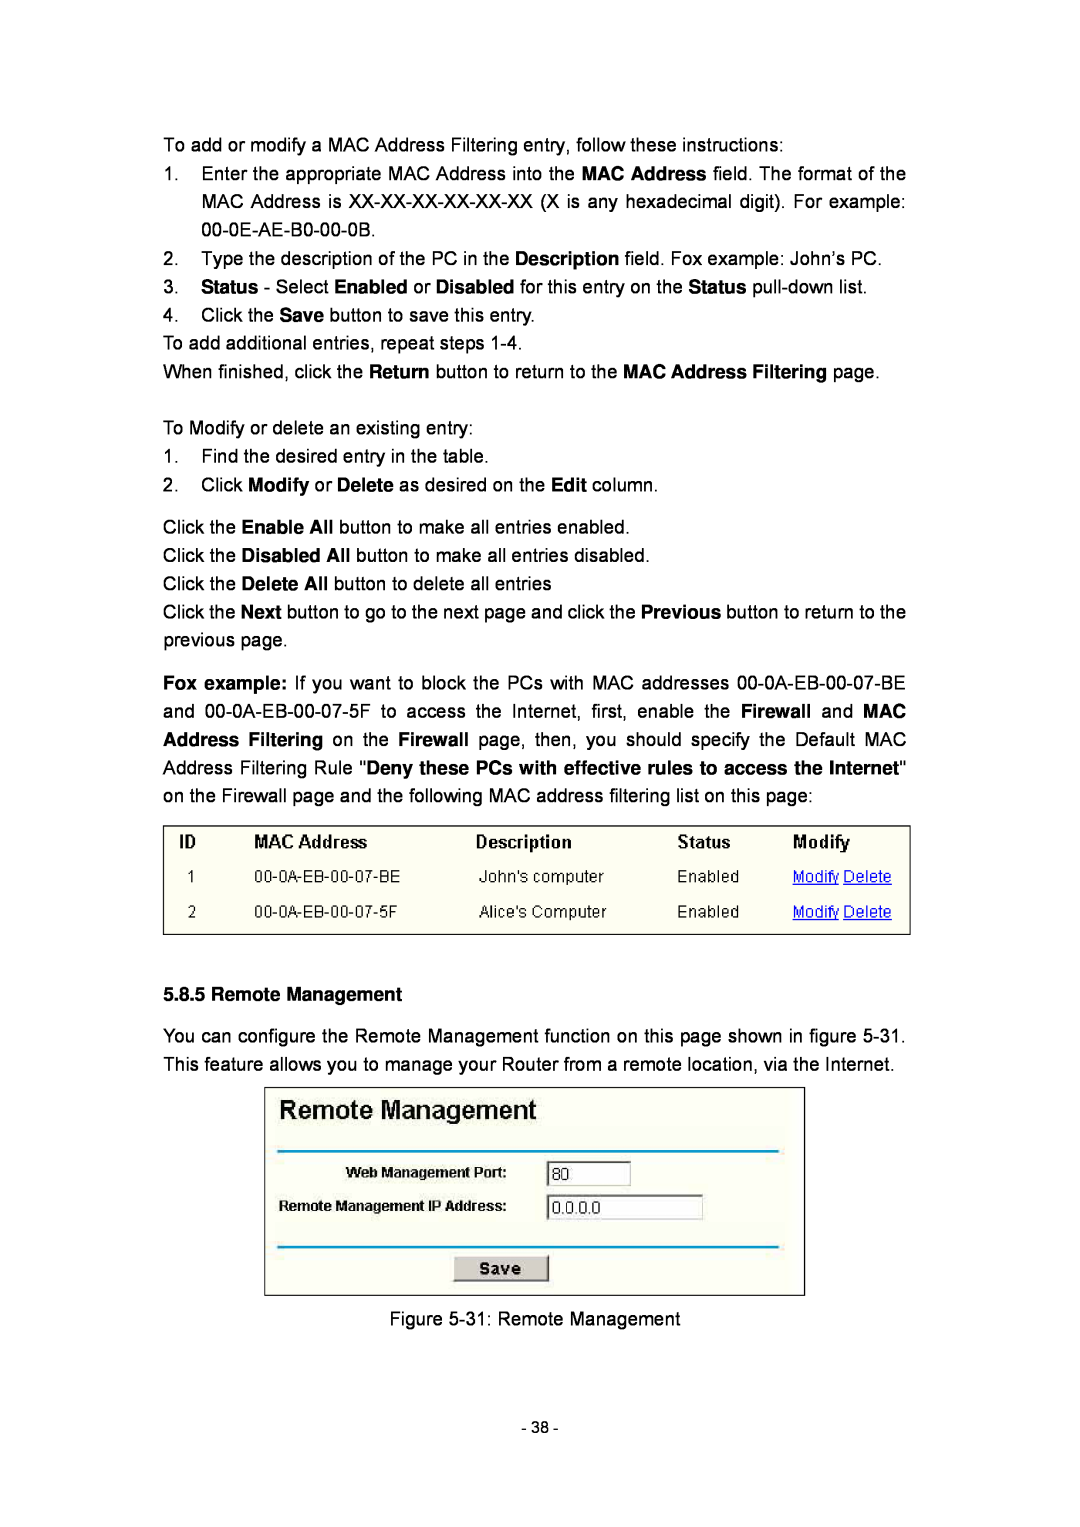 Olitec RW400SG manual Remote Management 